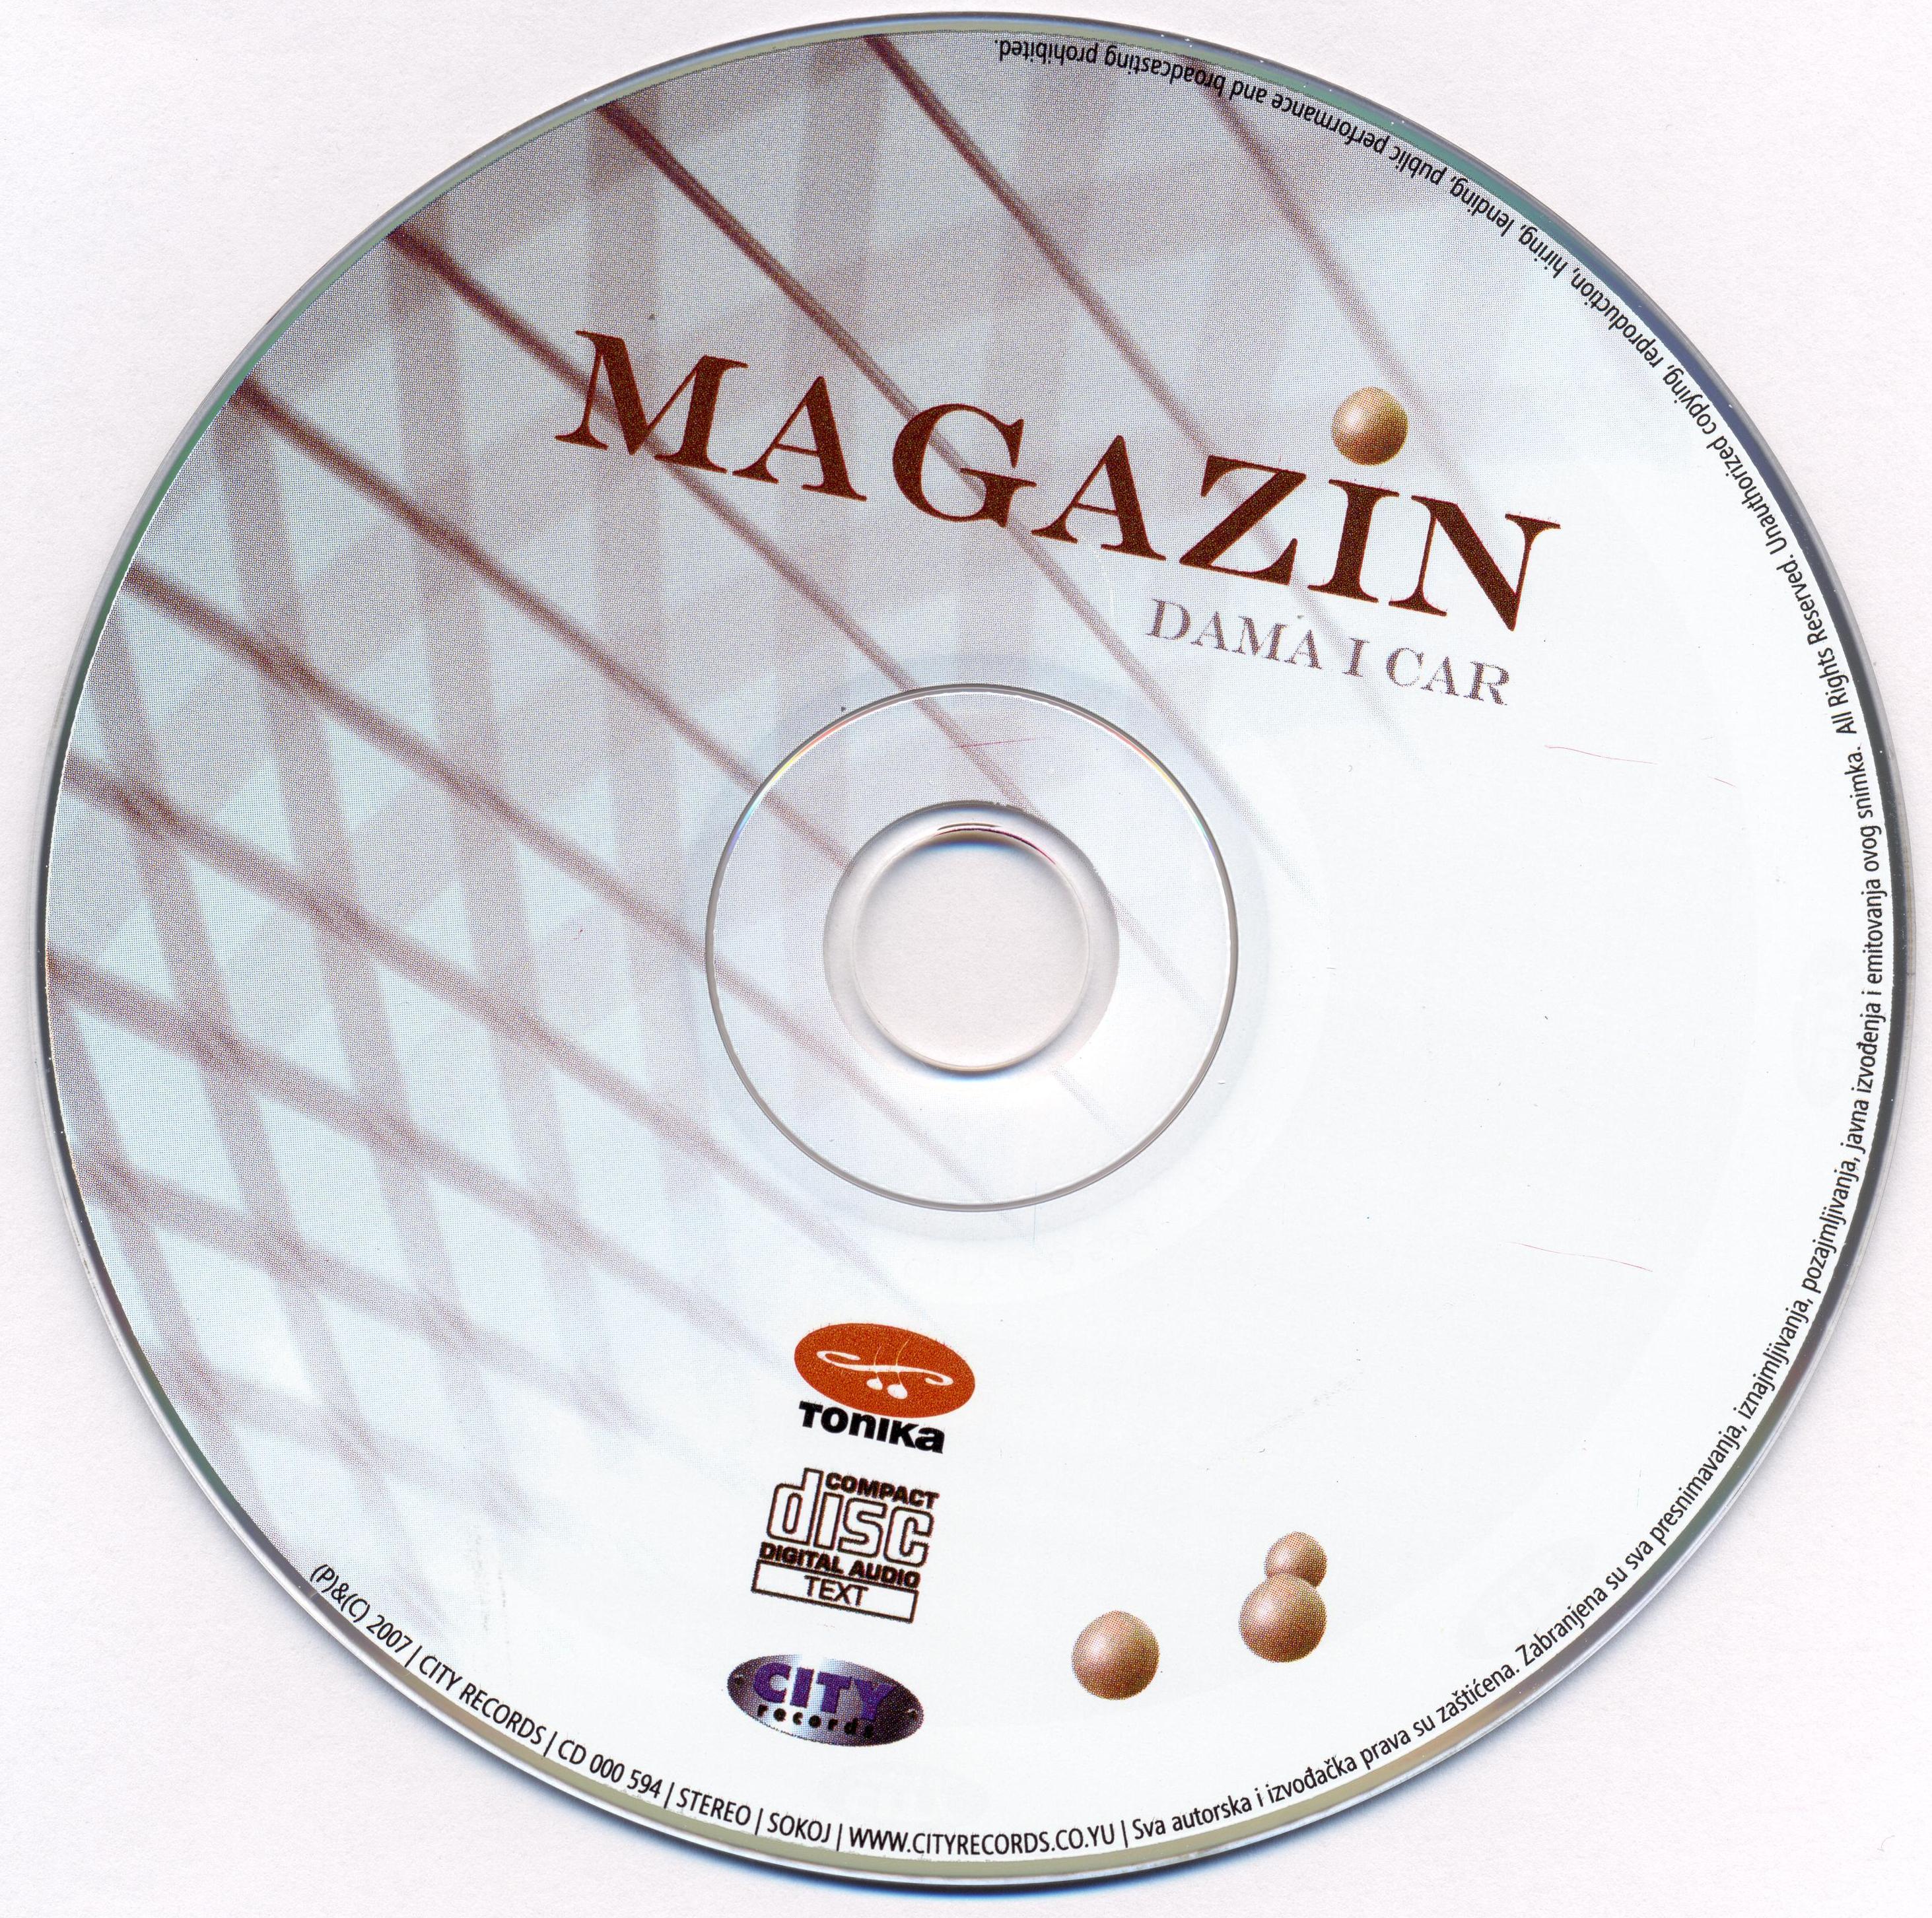 Magazin Dama i car 2007 cd